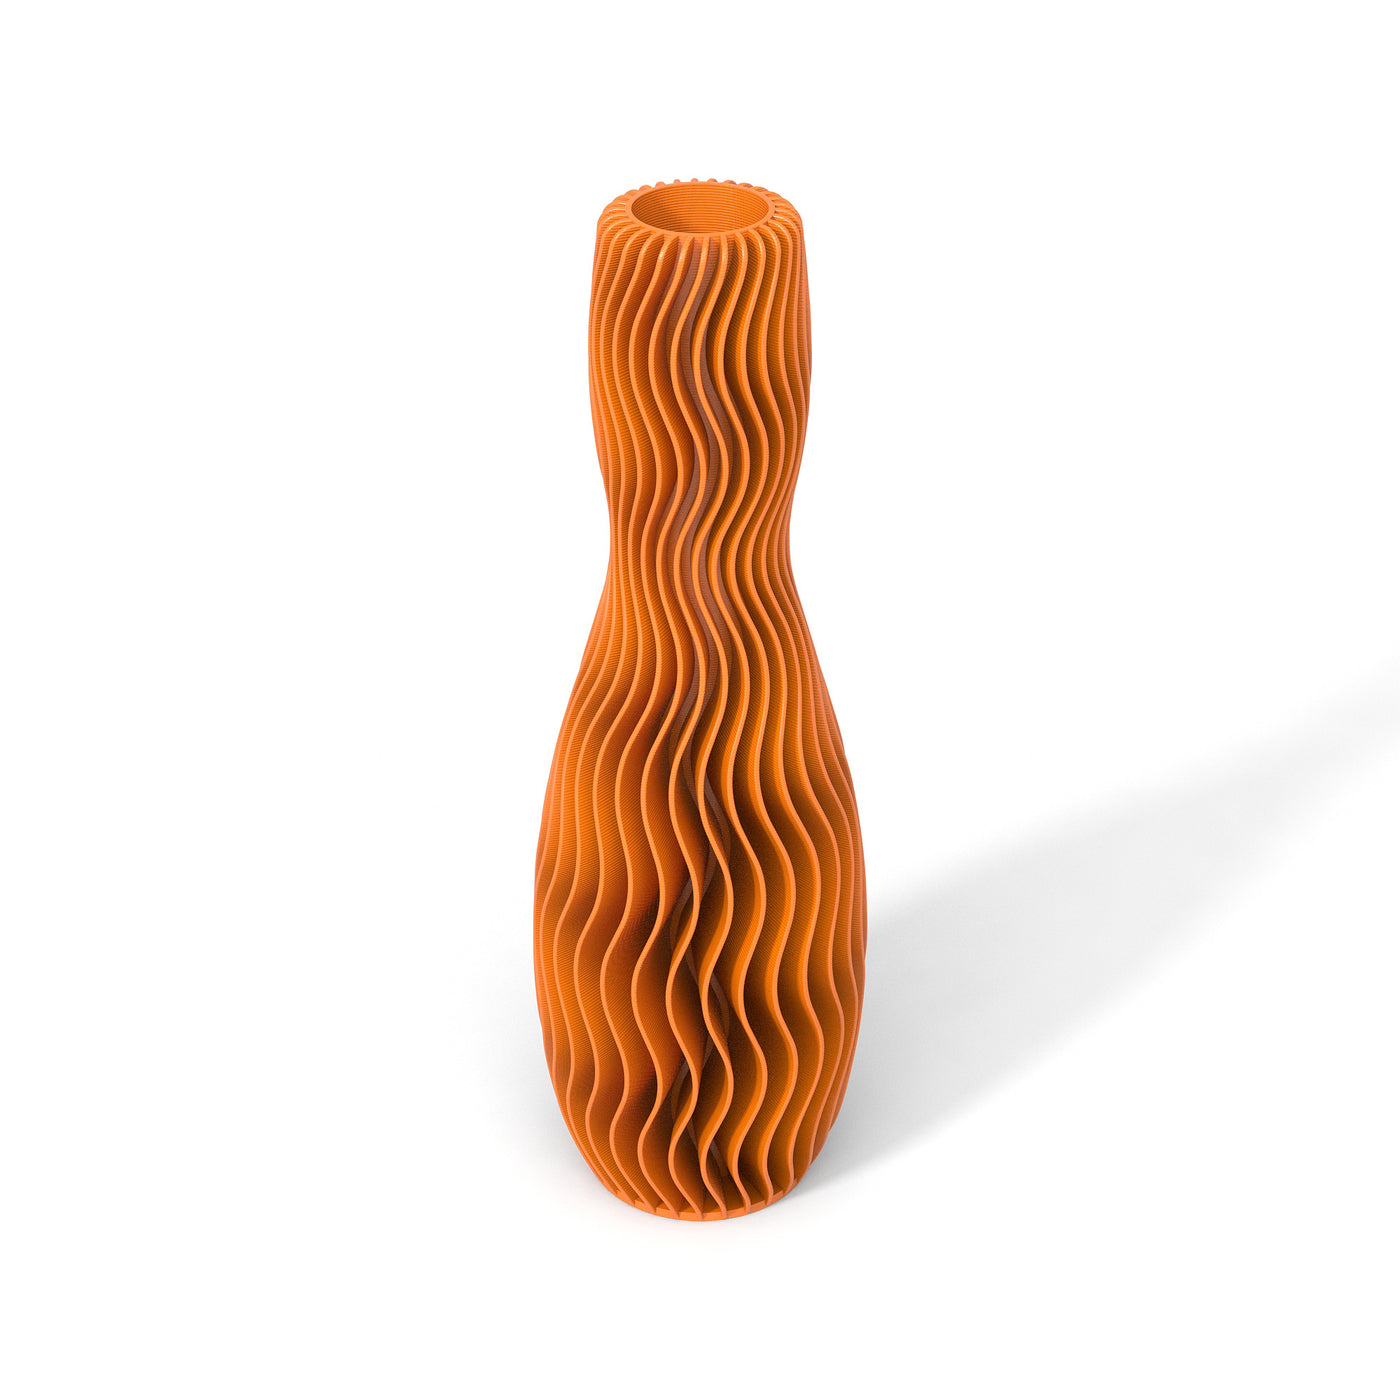 Oranžová designová váza 3D print Martin Žampach WAVE 4